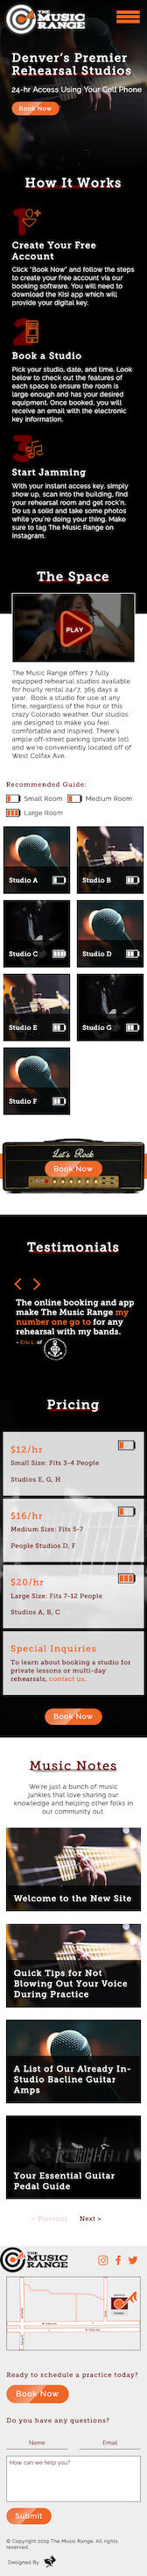 Screenshot of website developed for The Music Range